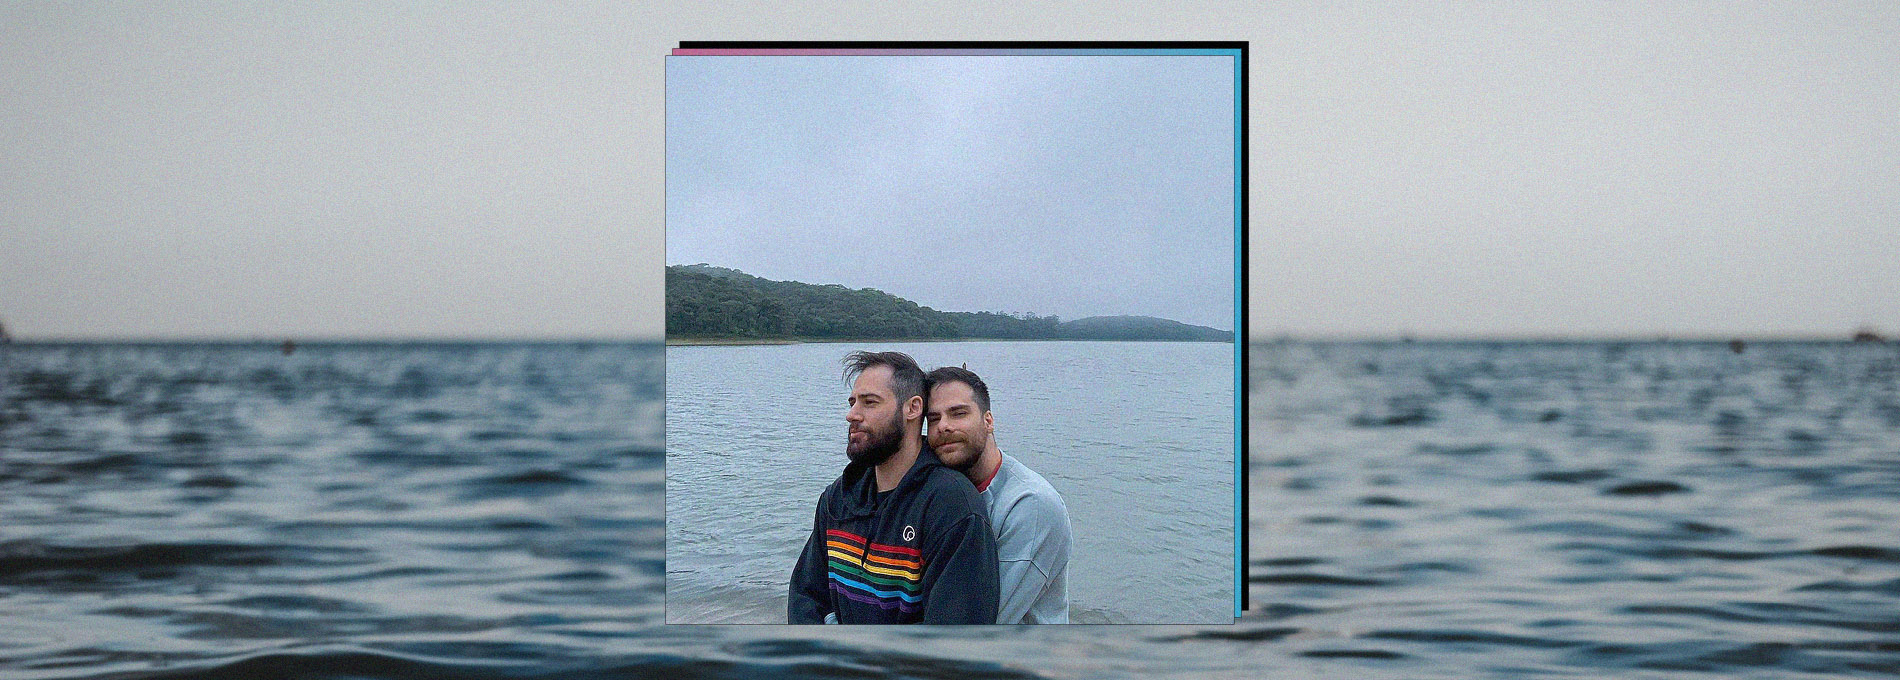 Paulo Vaz sendo abraçado por Pedro HMC em frente a um lago, céu cinza e dia frio